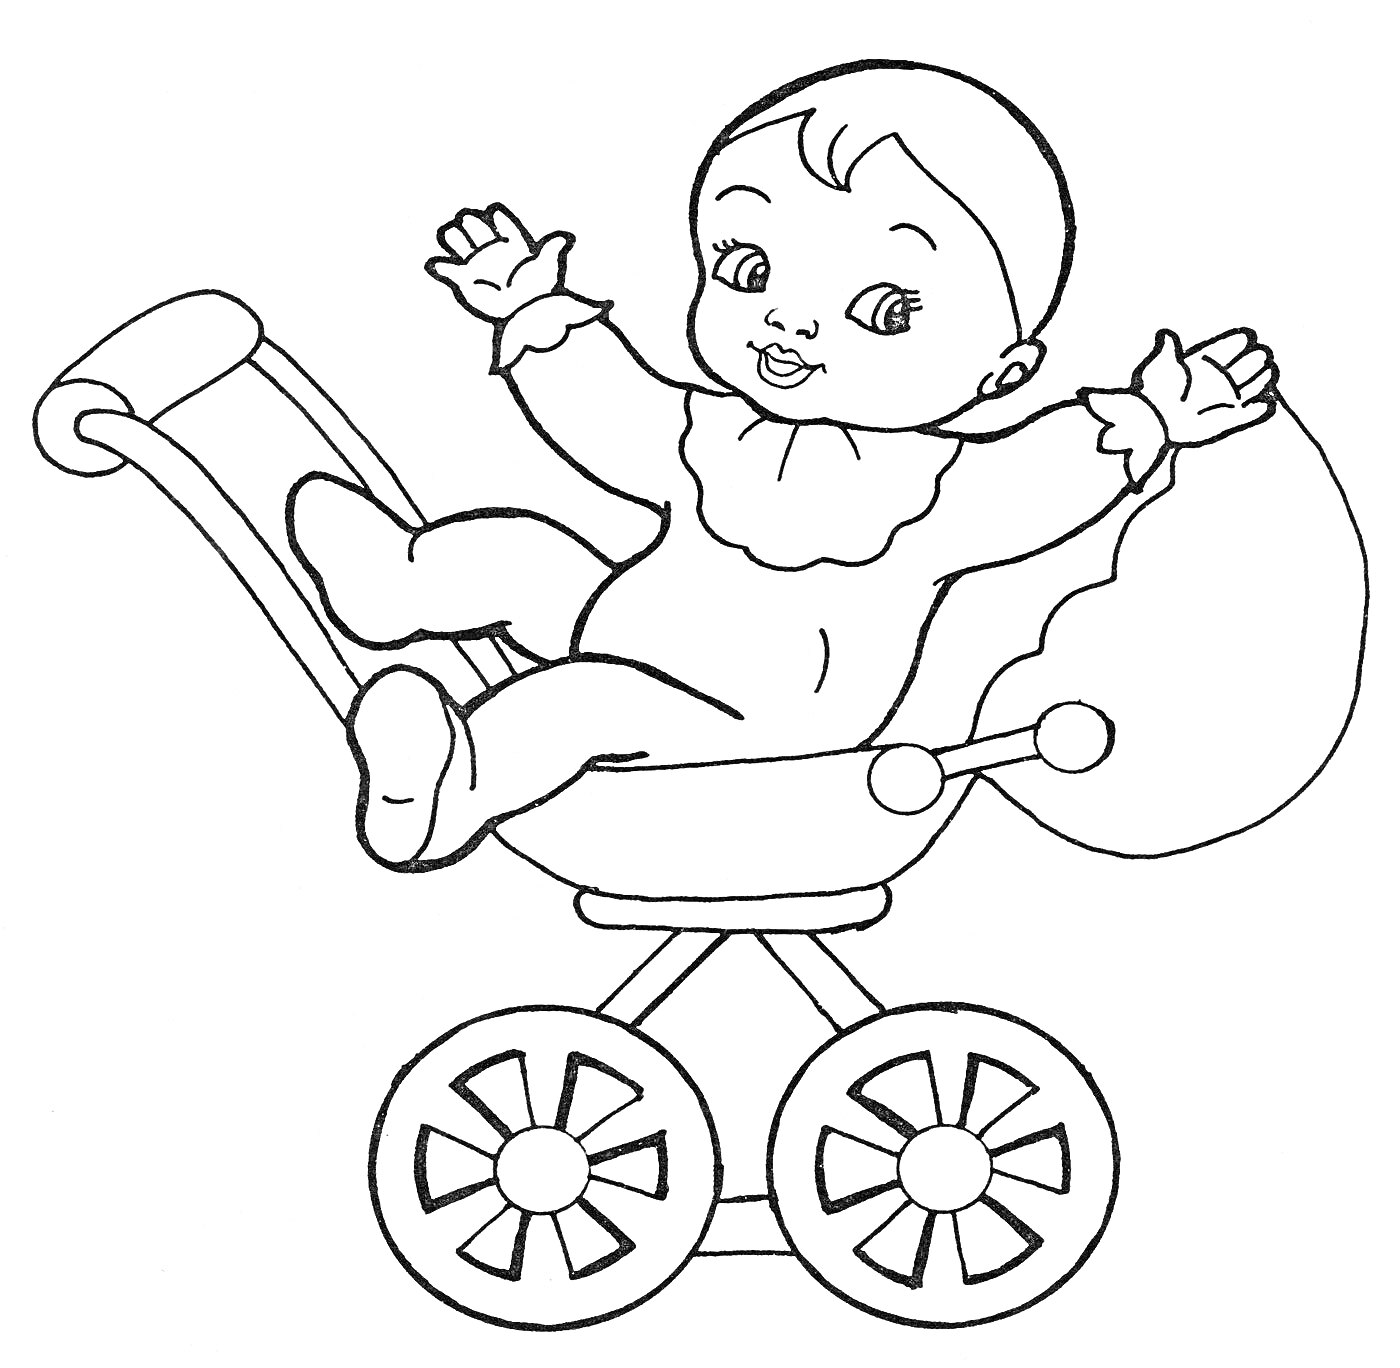 Раскраска Младенец в коляске с высоко поднятыми руками